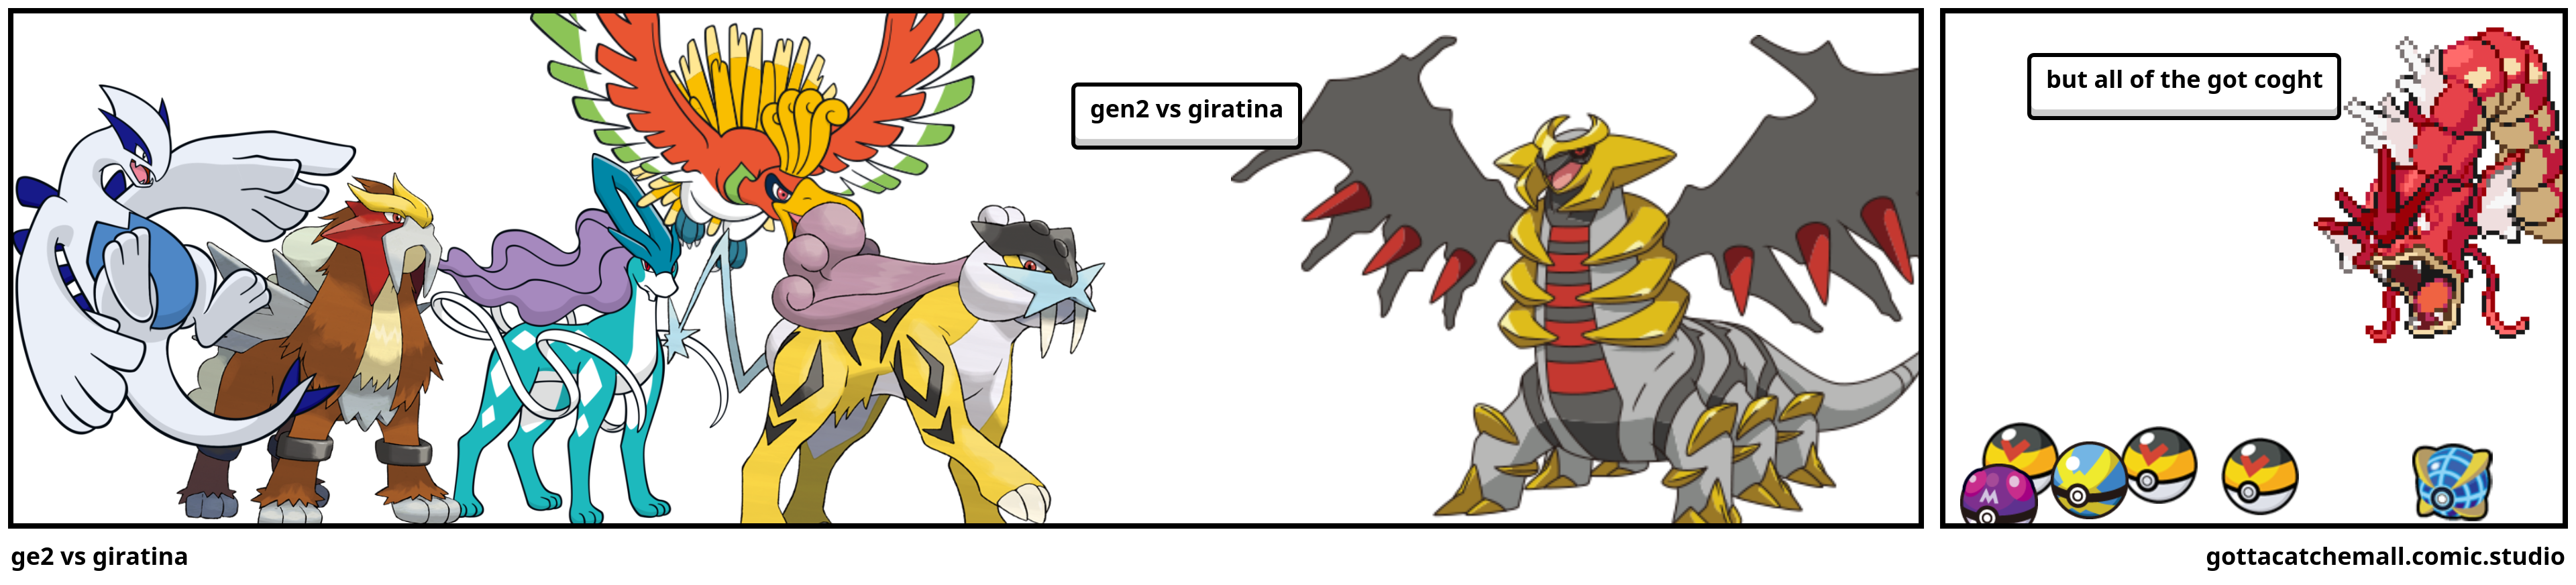 ge2 vs giratina